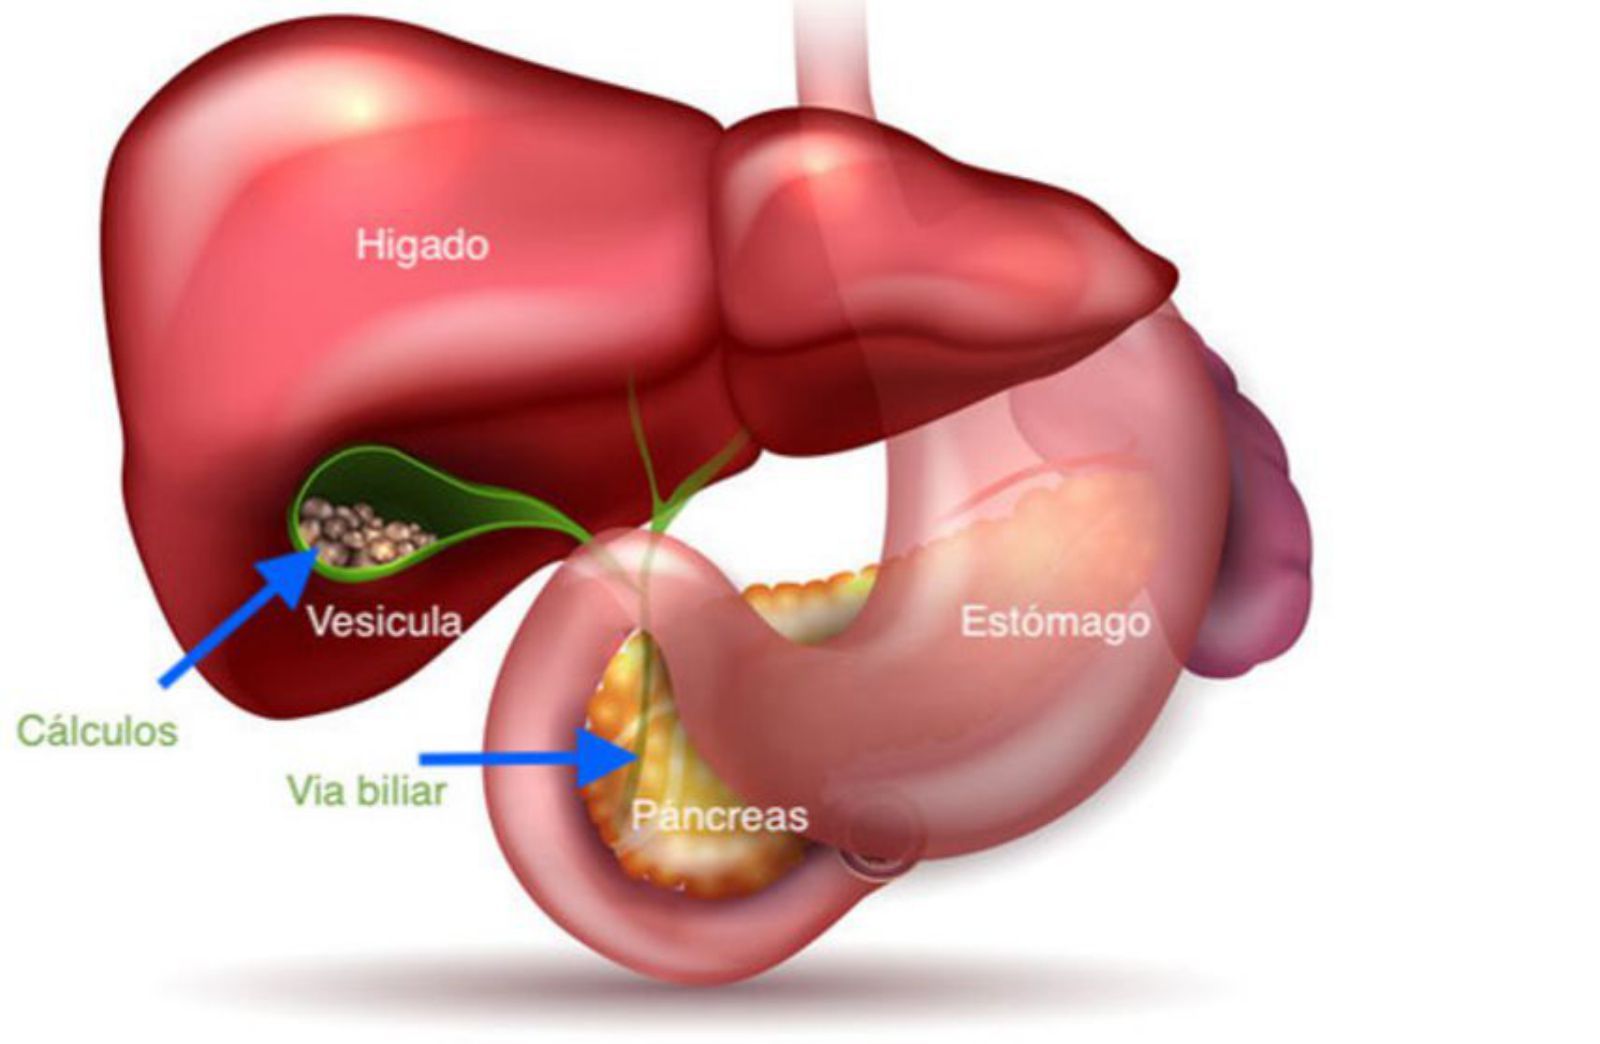 Representación de  la vesícula y su relación con órganos 
vecinos.